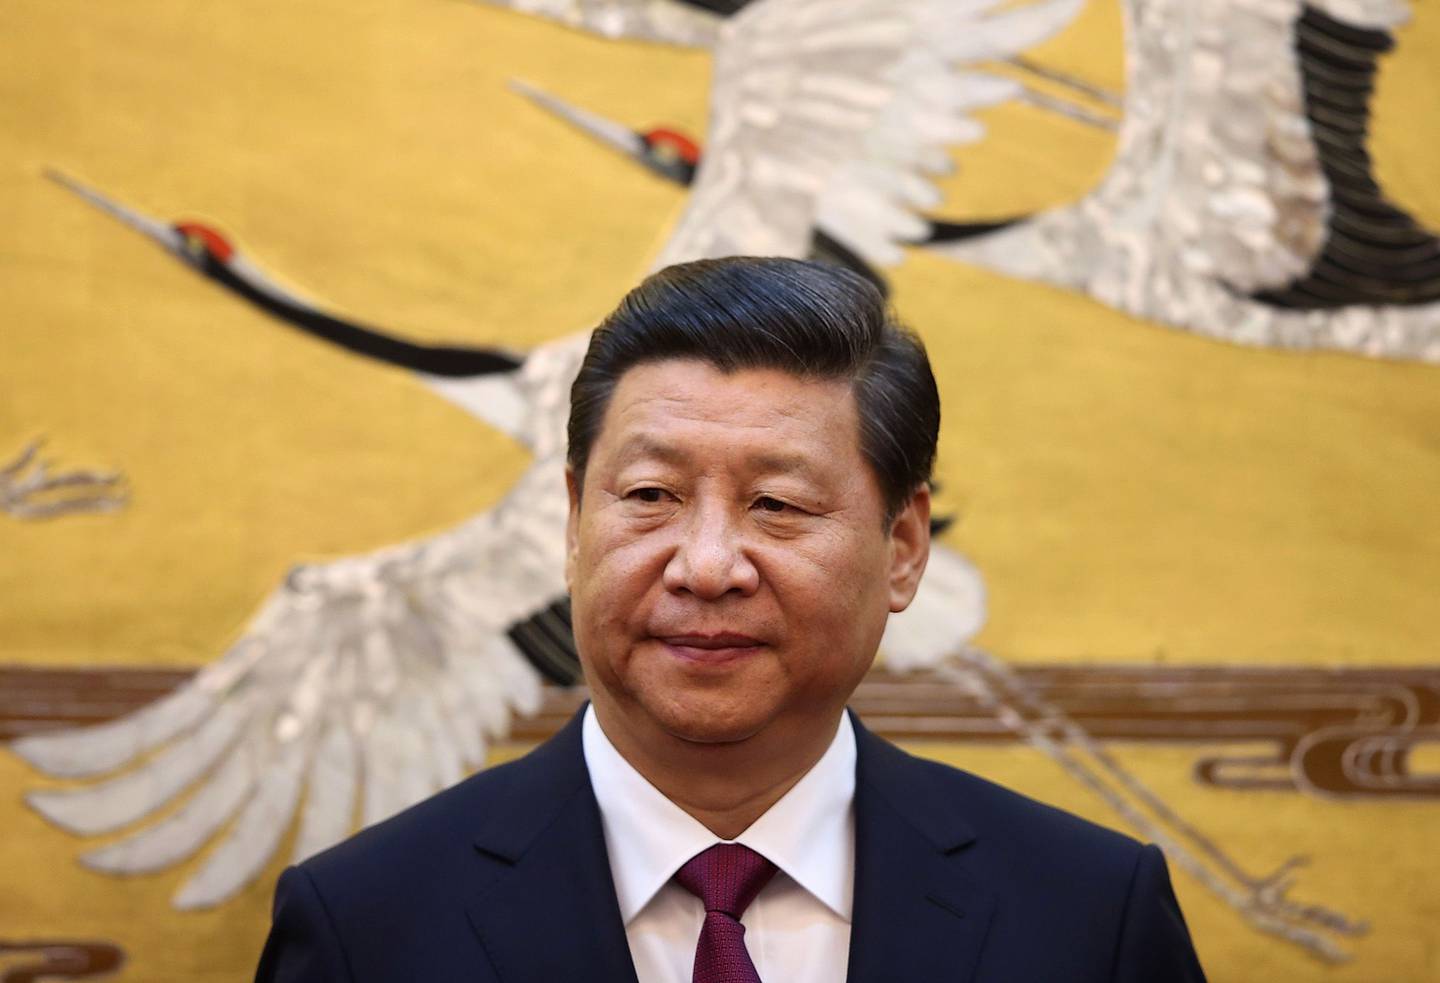 “No se puede relajar la labor de prevención y control”, dijo Xi durante un viaje a la provincia insular de Hainan, según informó la agencia oficial de noticias Xinhua a última hora del miércoles, el mismo día en que el centro financiero registró un récord de 27.719 nuevos casos.